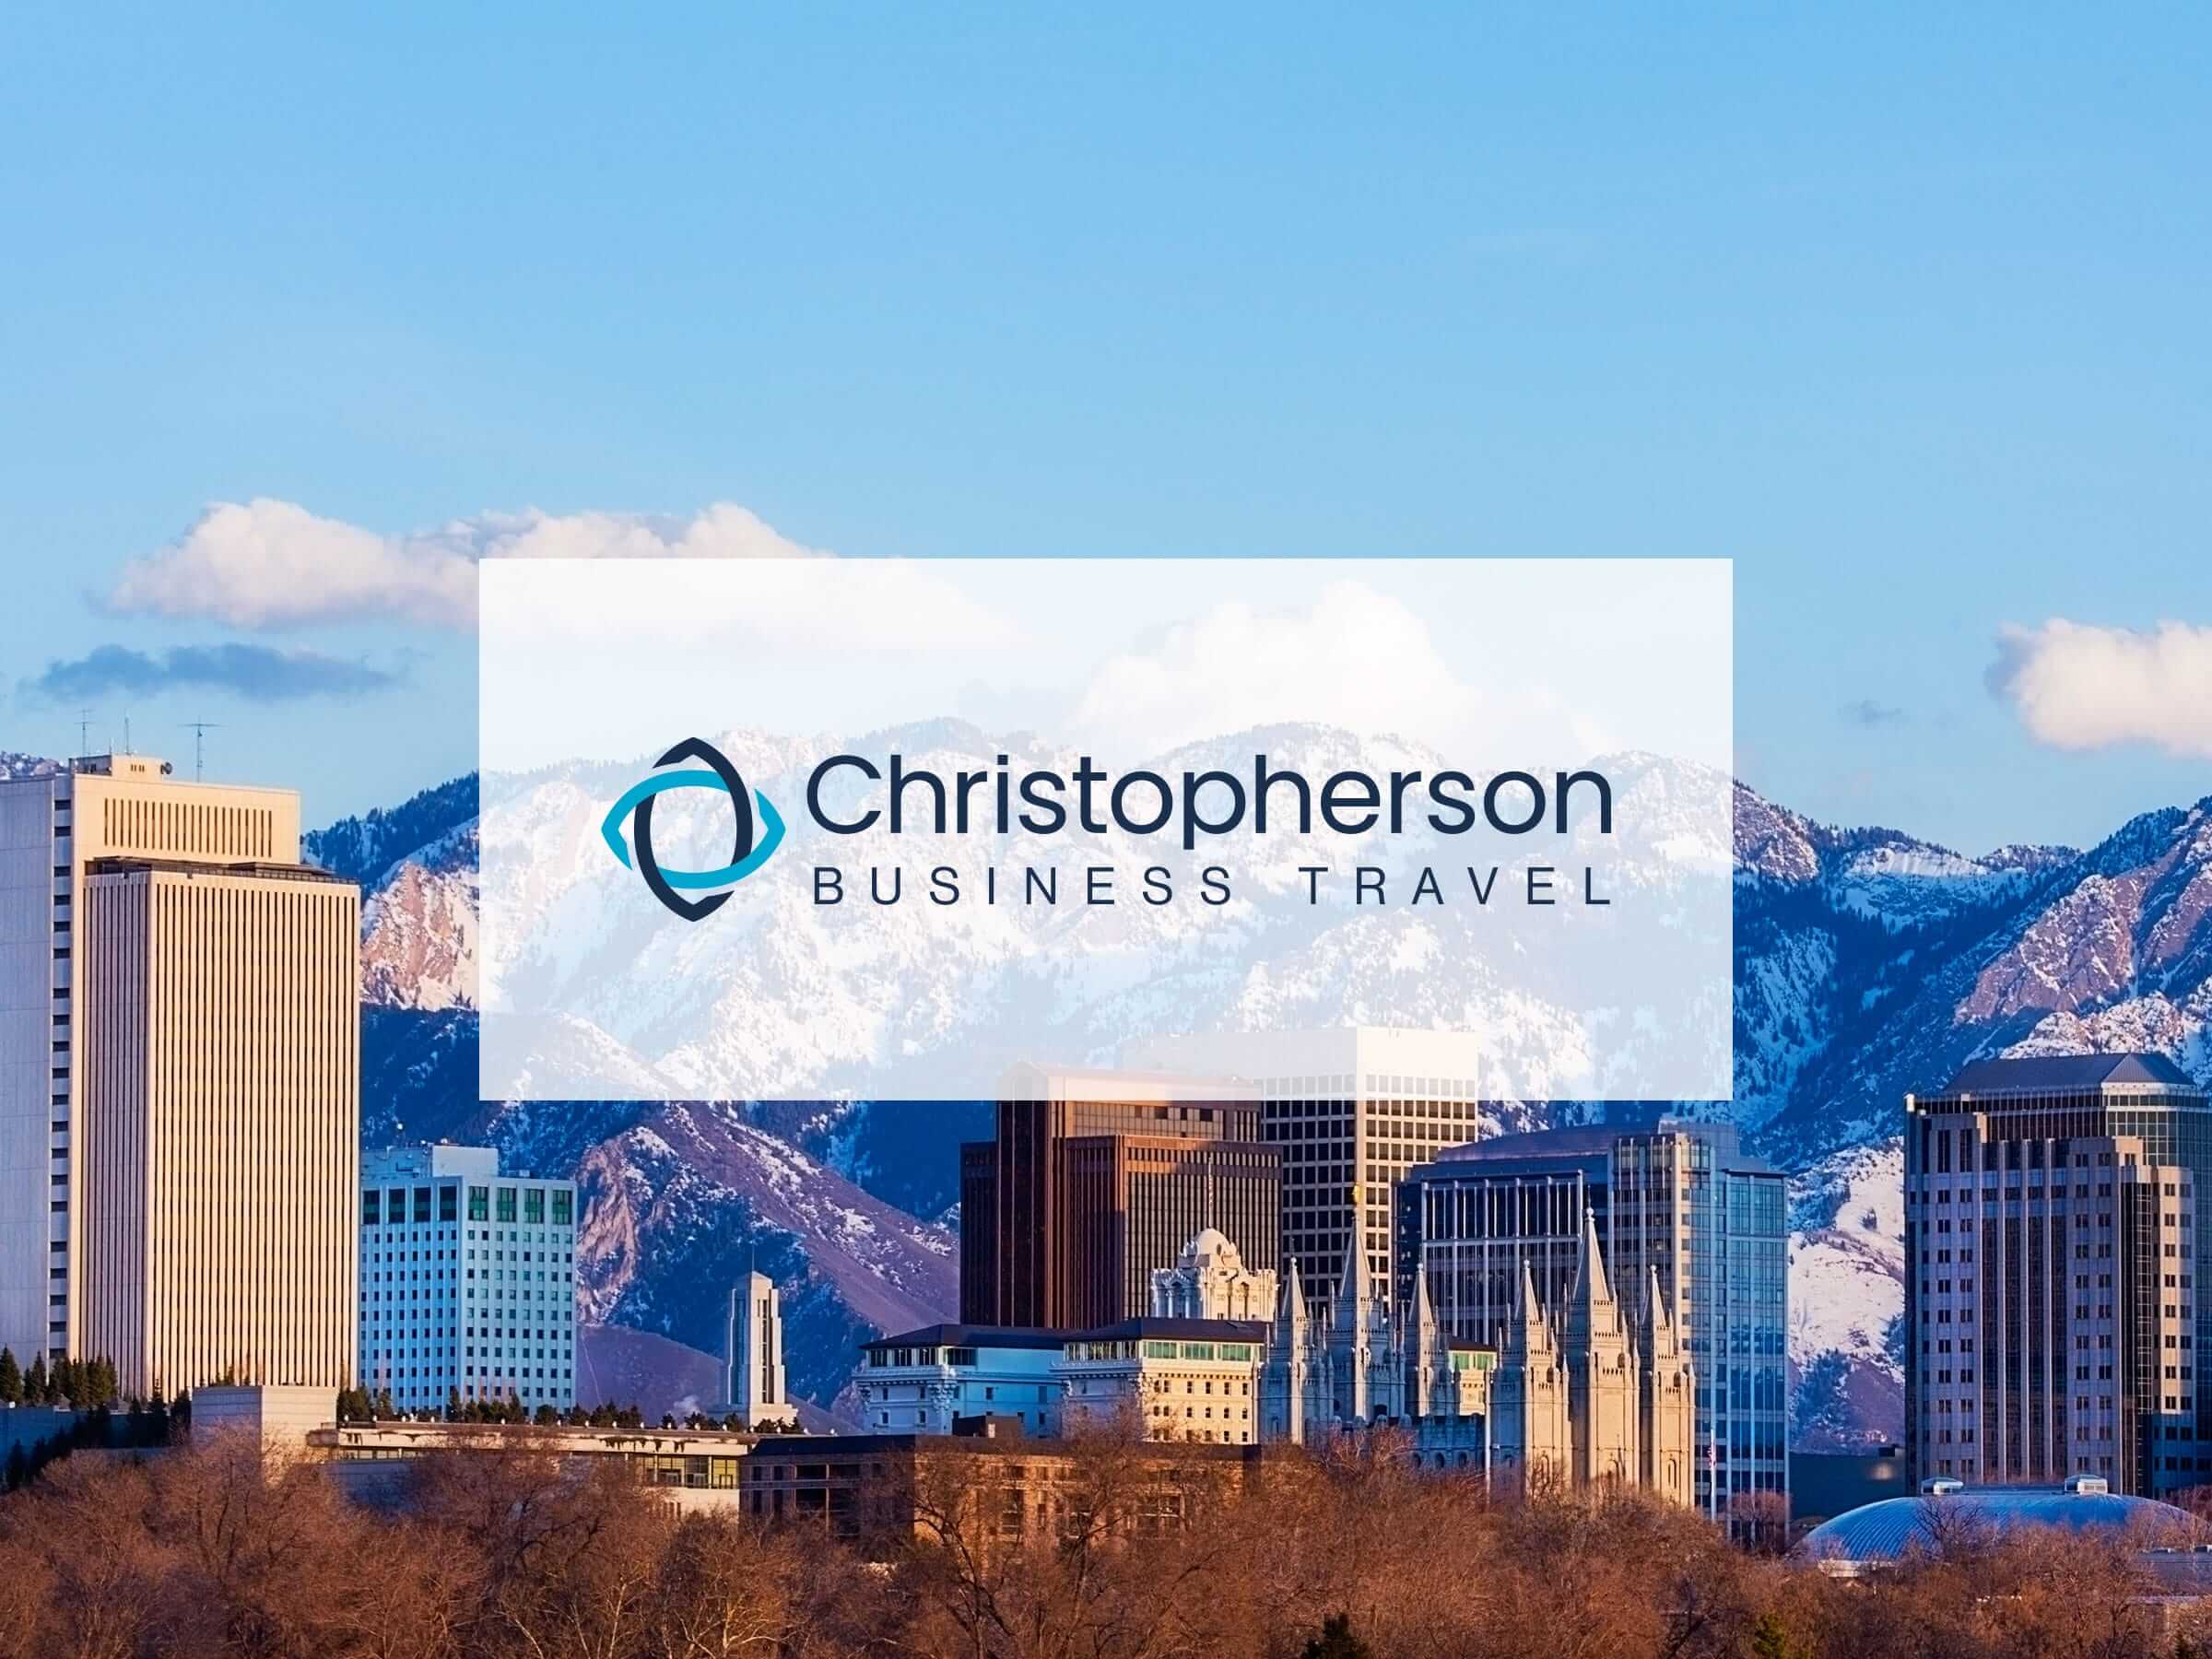 Christopherson Business Travel – Français